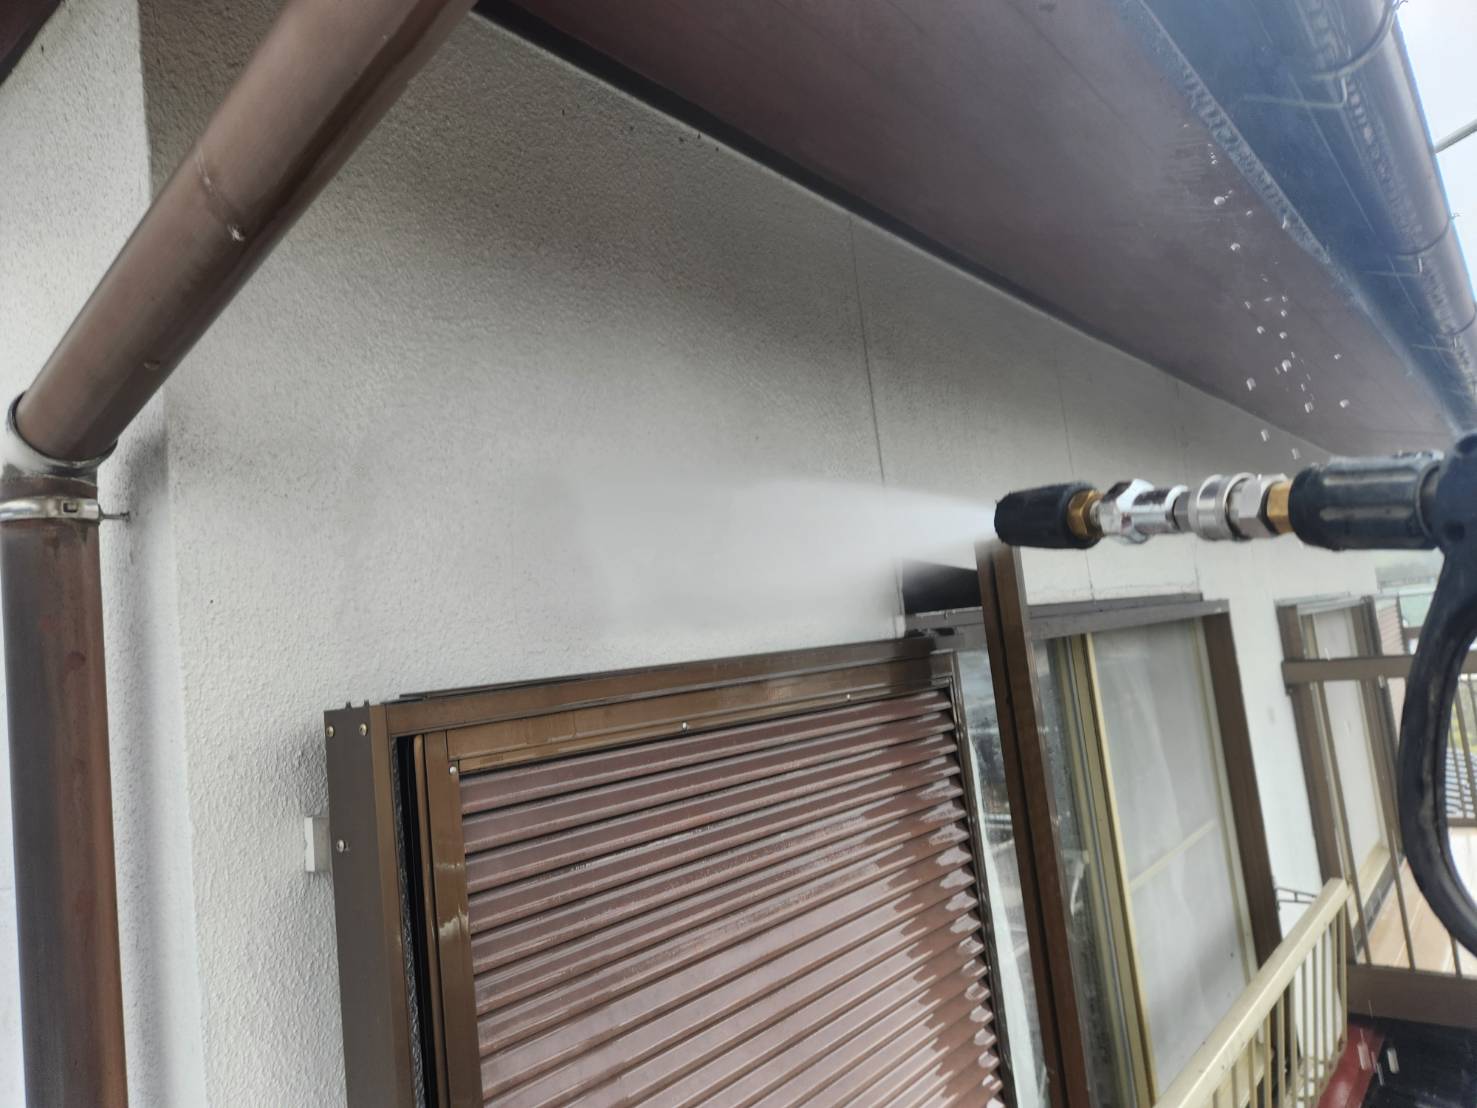 福岡県太宰府市青山のE様邸で屋根外壁ともにシリコン塗料を使用し、広範囲に発生している外壁のひび割れの補修や付帯部の塗膜剥がれなどの改善をしながら塗装工事を進めていきます。4/6着工です。【HPより】